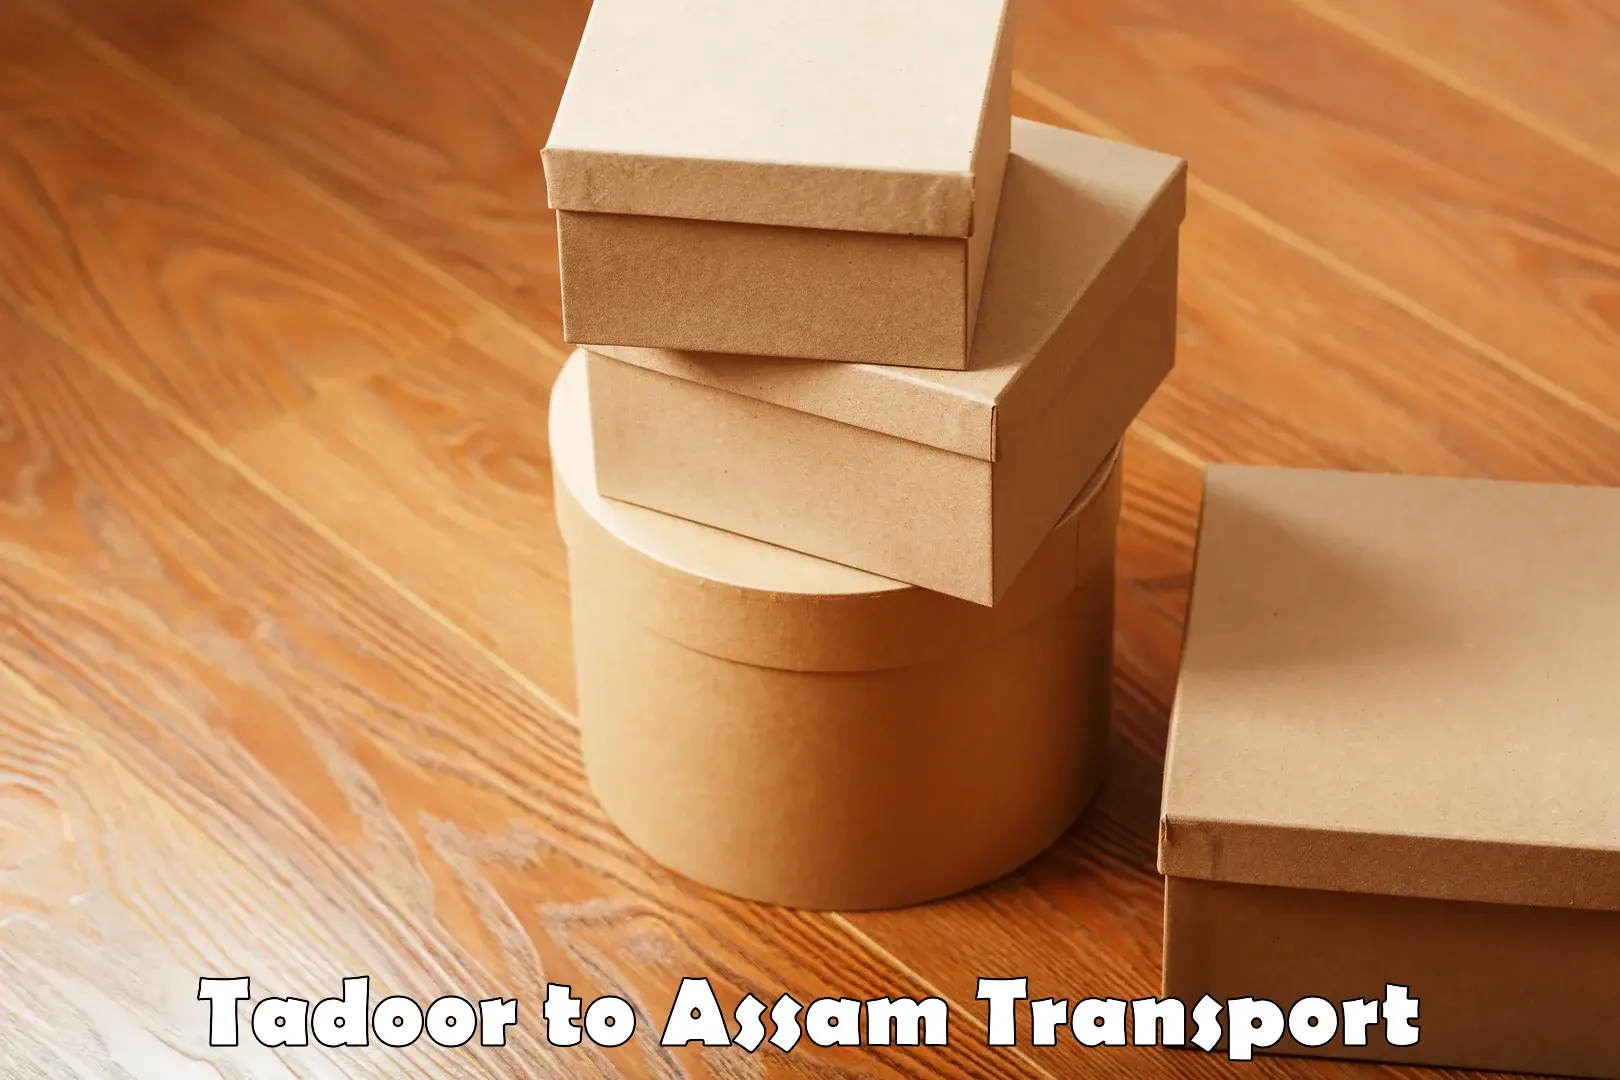 Container transport service Tadoor to Jorhat